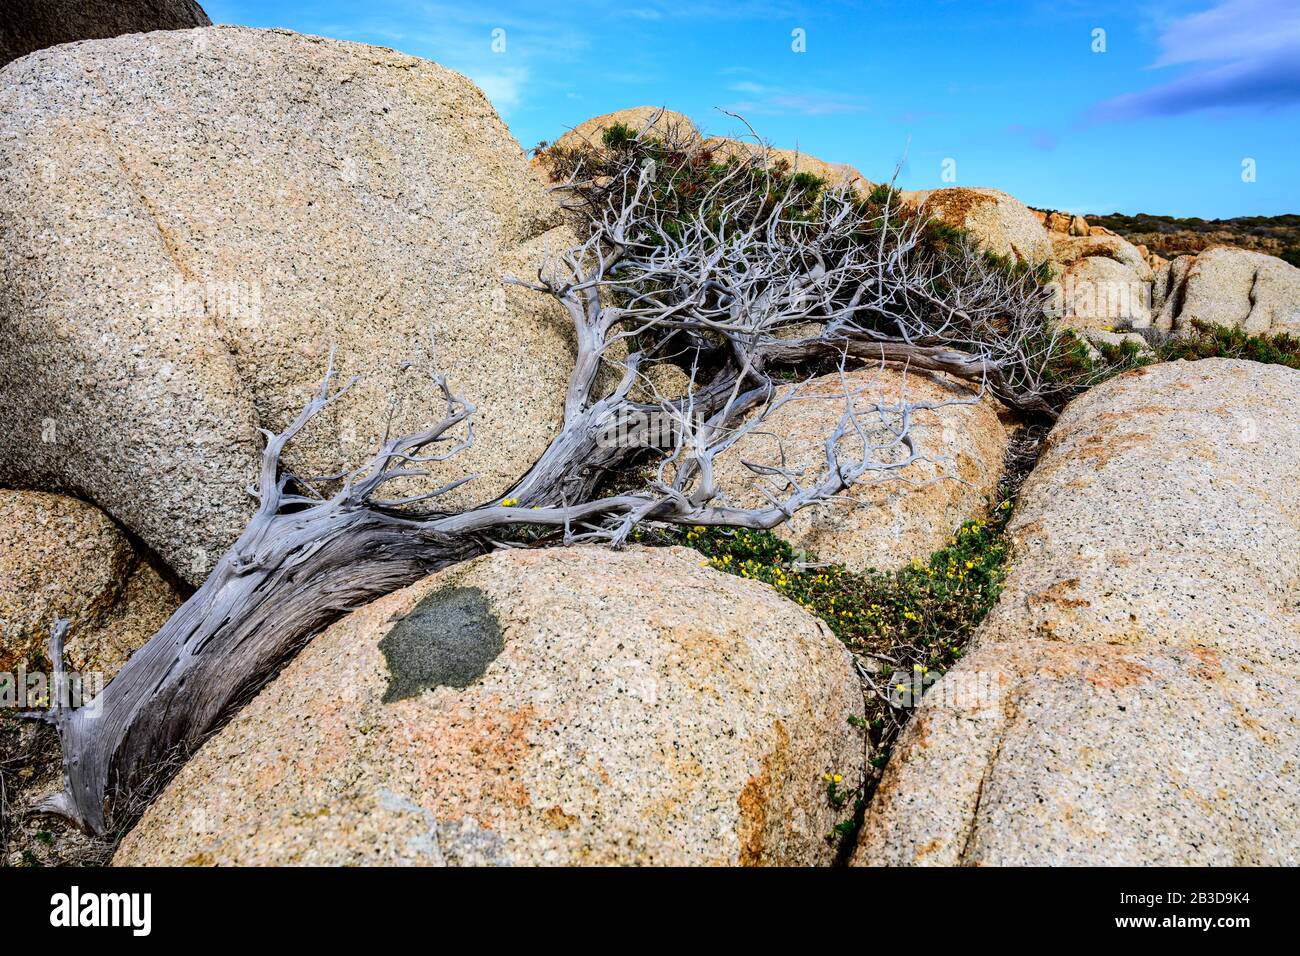 Wacholderbaum (Juniperus), geschützt vor dem Wind zwischen Steinen, windgepeitschtem Baum, Sardinien, Italien Stockfoto